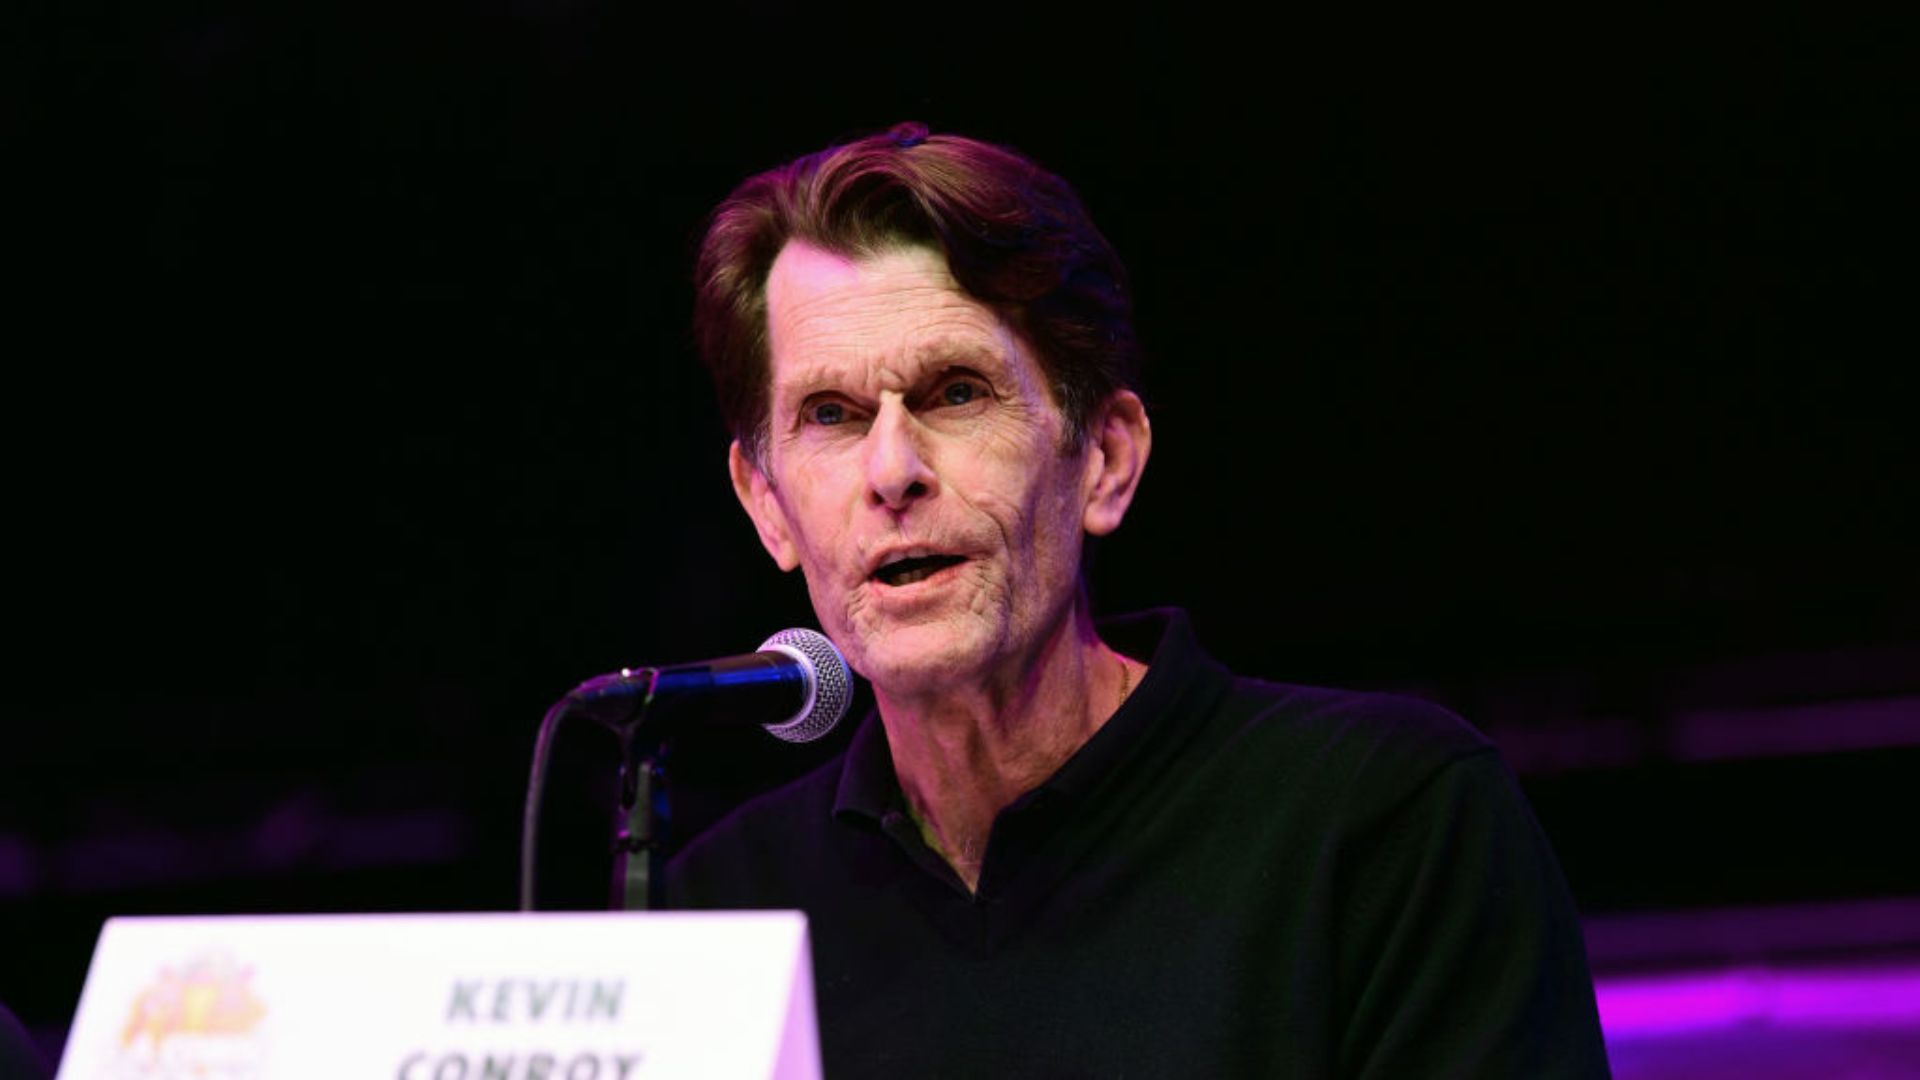 Kevin Conroy, voz do Batman na trilogia Arkham, morre aos 66 anos